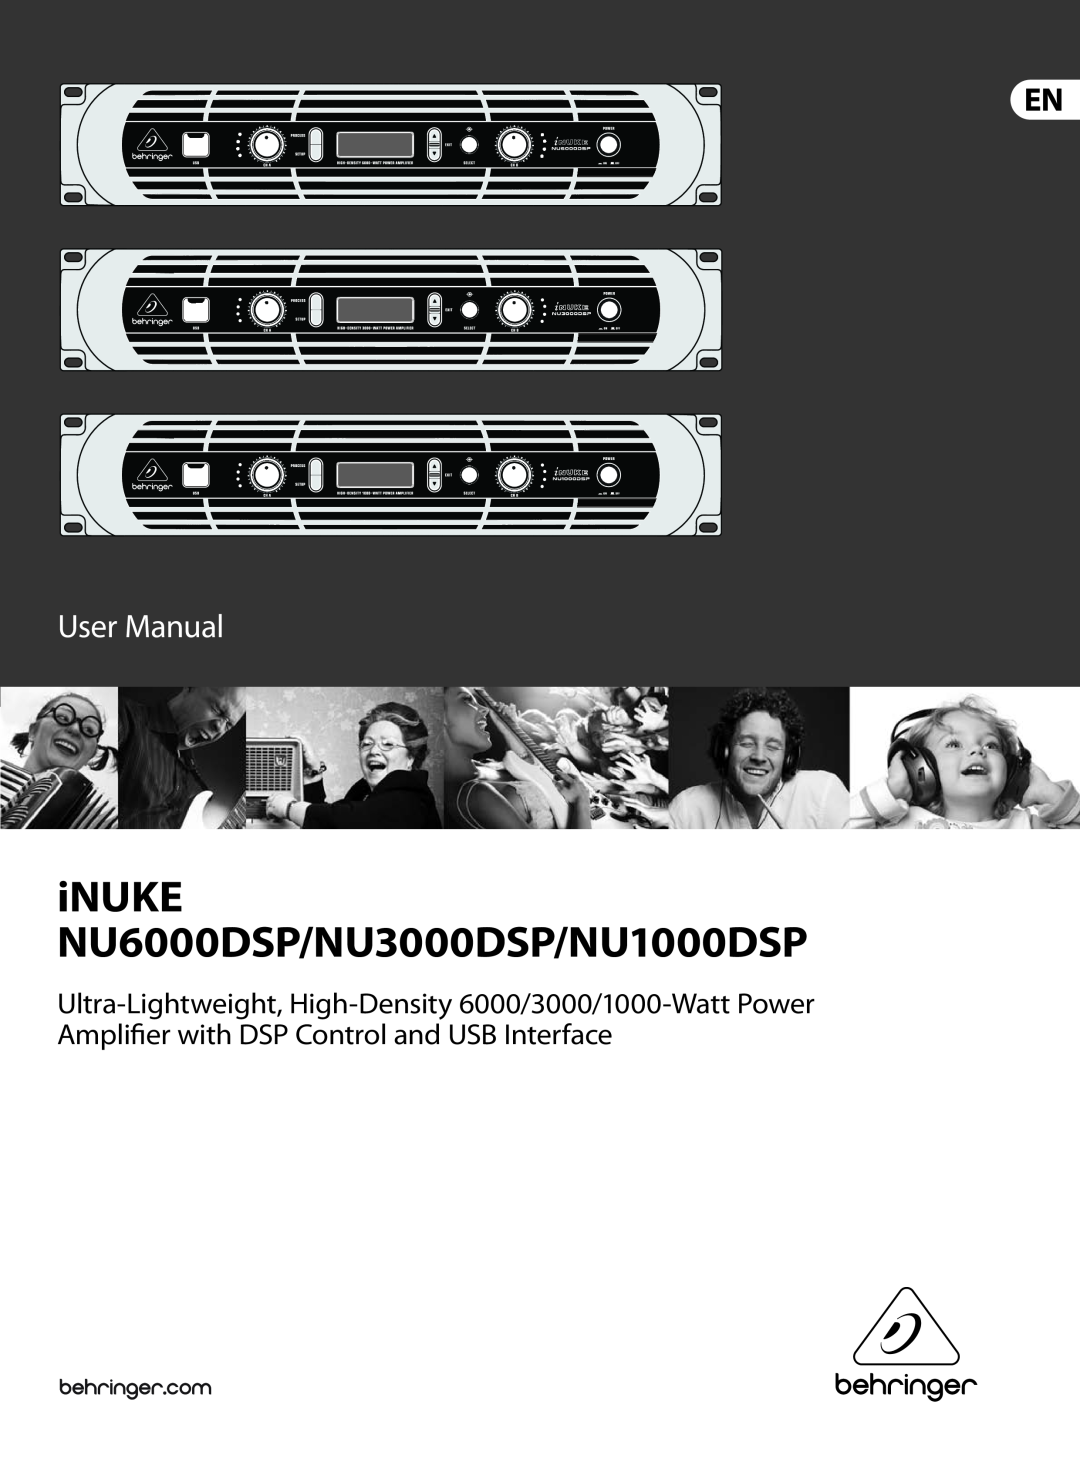 Behringer user manual iNUKE NU6000DSP/NU3000DSP/NU1000DSP 